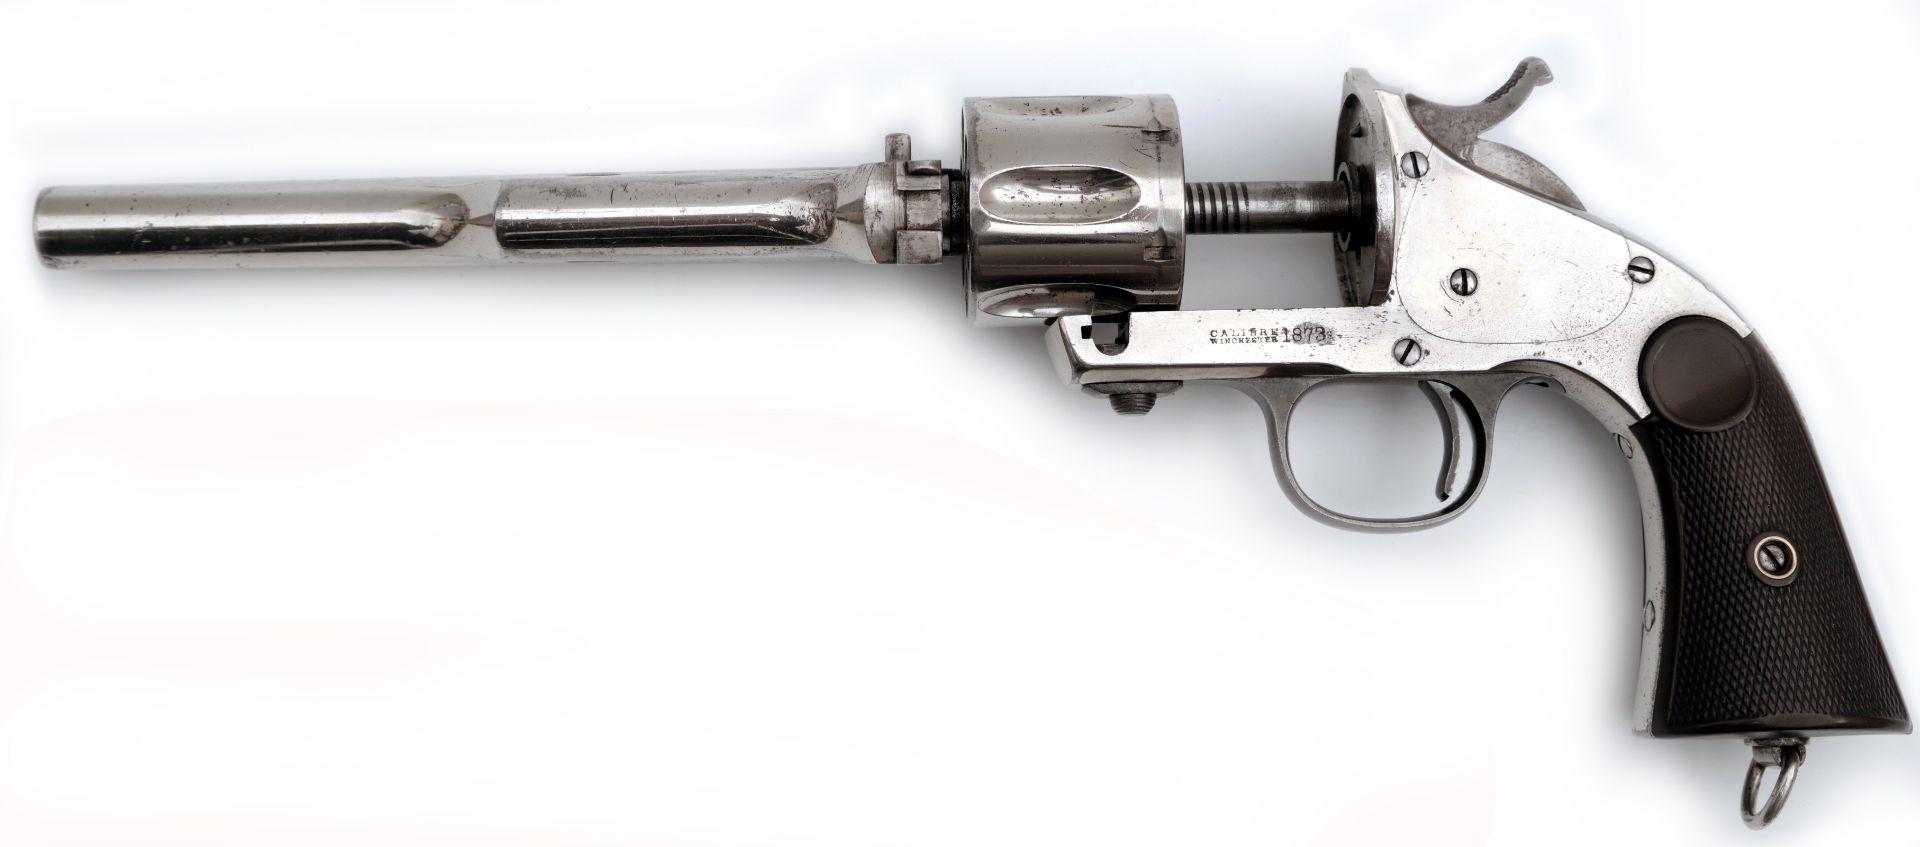 Merwin und Hulbert Revolver| Hersteller Hopkins & Allen - Bild 4 aus 5